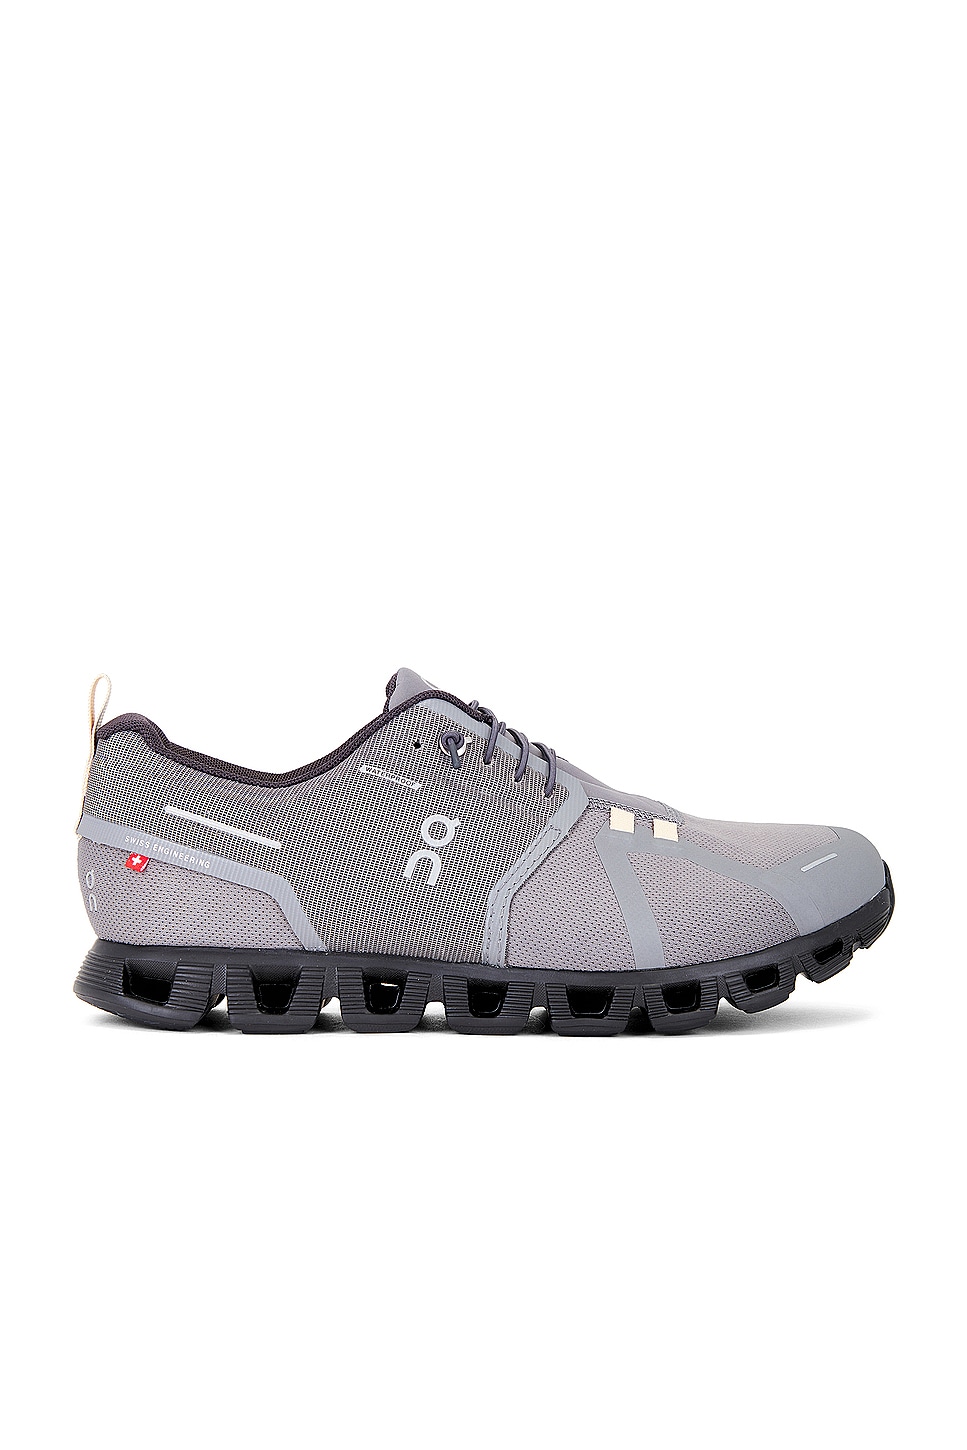 Image 1 of On Cloud 5 Waterproof Sneaker in Asphalt & Magnet